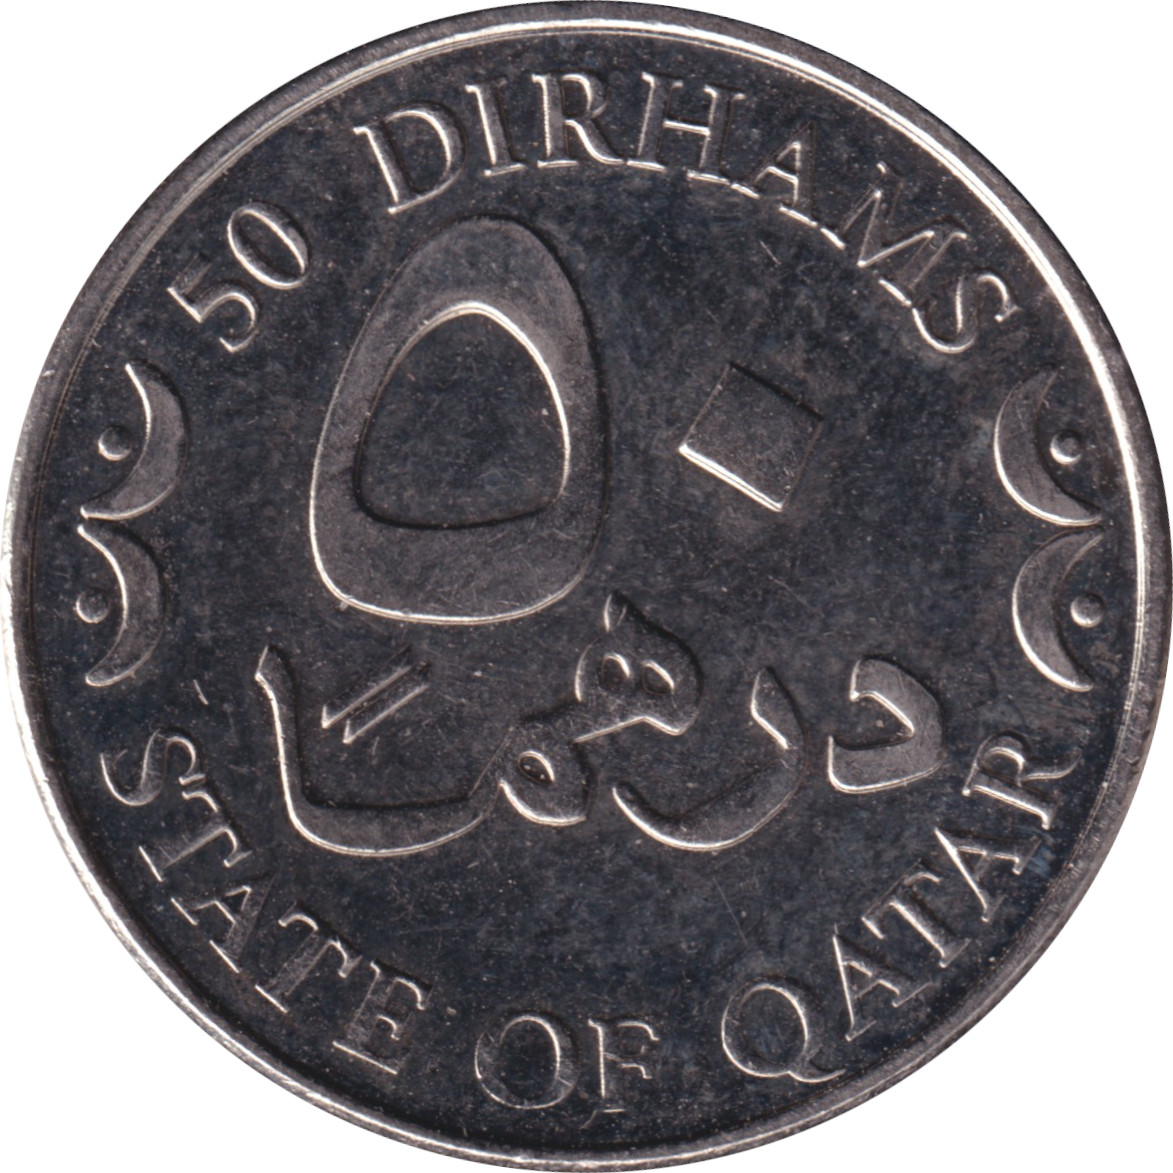 50 dirhams - Khalifah Bin Hamad - Oasis avecv épée